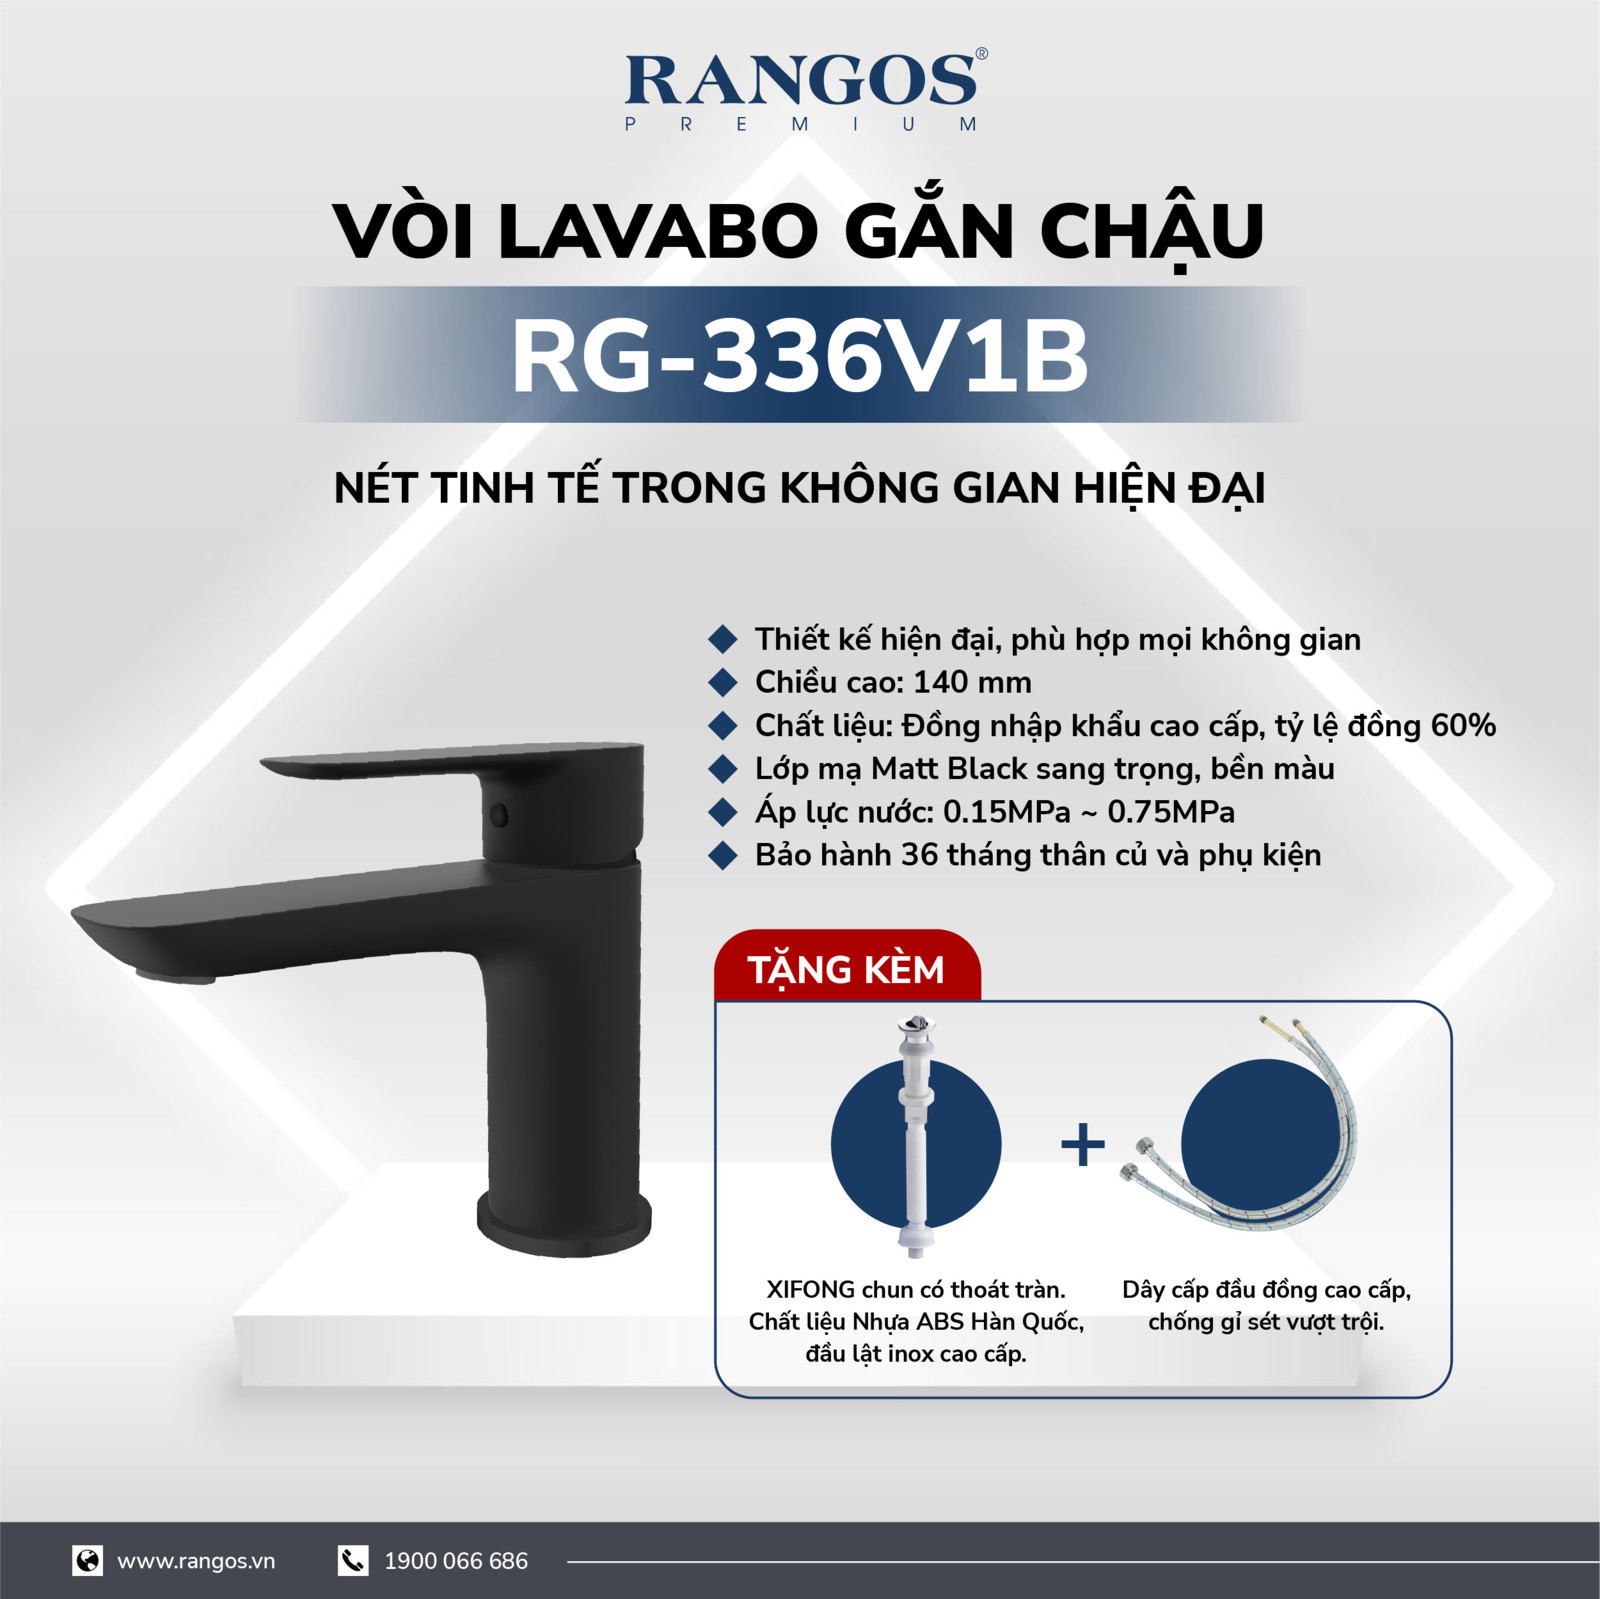 Bộ vòi lavabo gắn chậu Rangos RG-336V1B